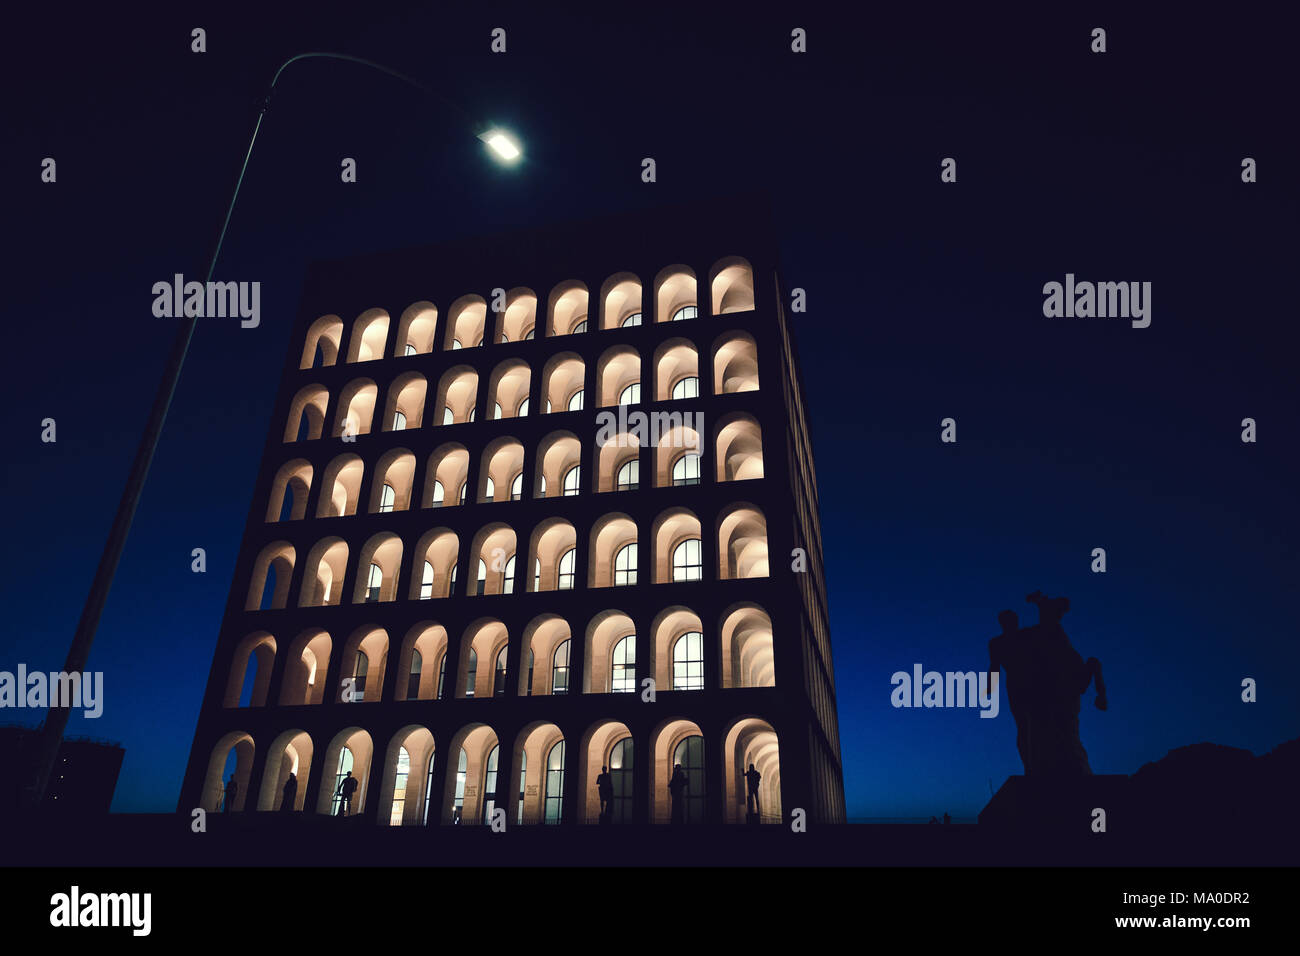 Rome (Italy) - Palazzo della Civiltà Italiana by Night, Street Lamp and Dioscuri equestrial statue silhouette Stock Photo